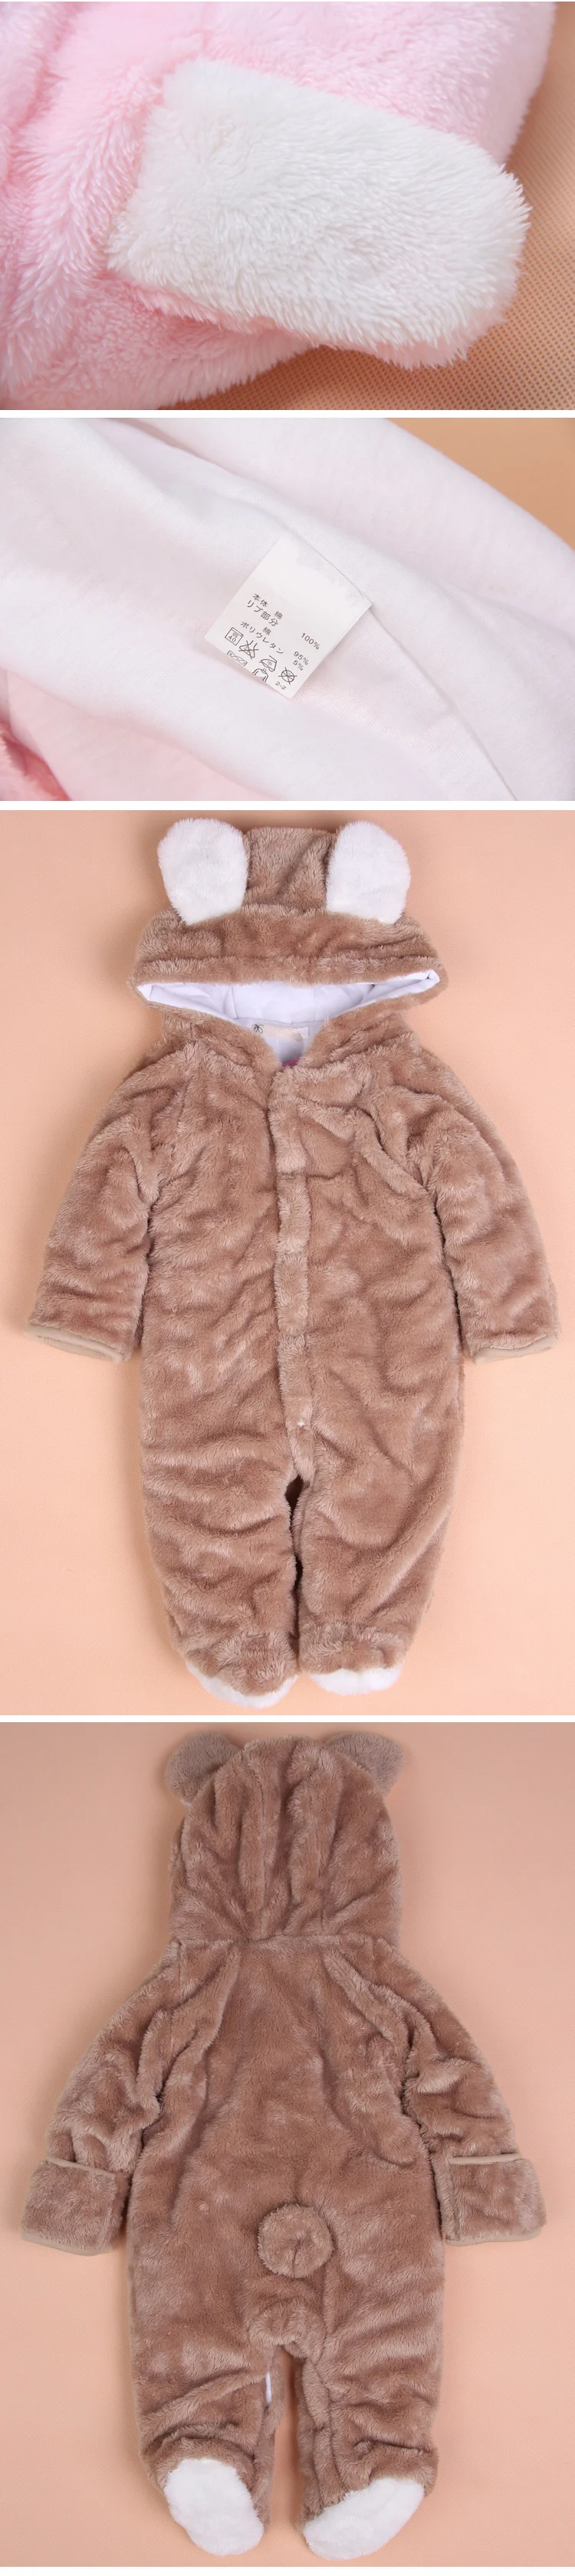 1 комплект, классический детский комбинезон с накидкой для зимы, комбинезон с длинными рукавами, детская одежда, комбинезон для малышей, одежда с рисунком медведя, кролика, поросенка, 3 цвета